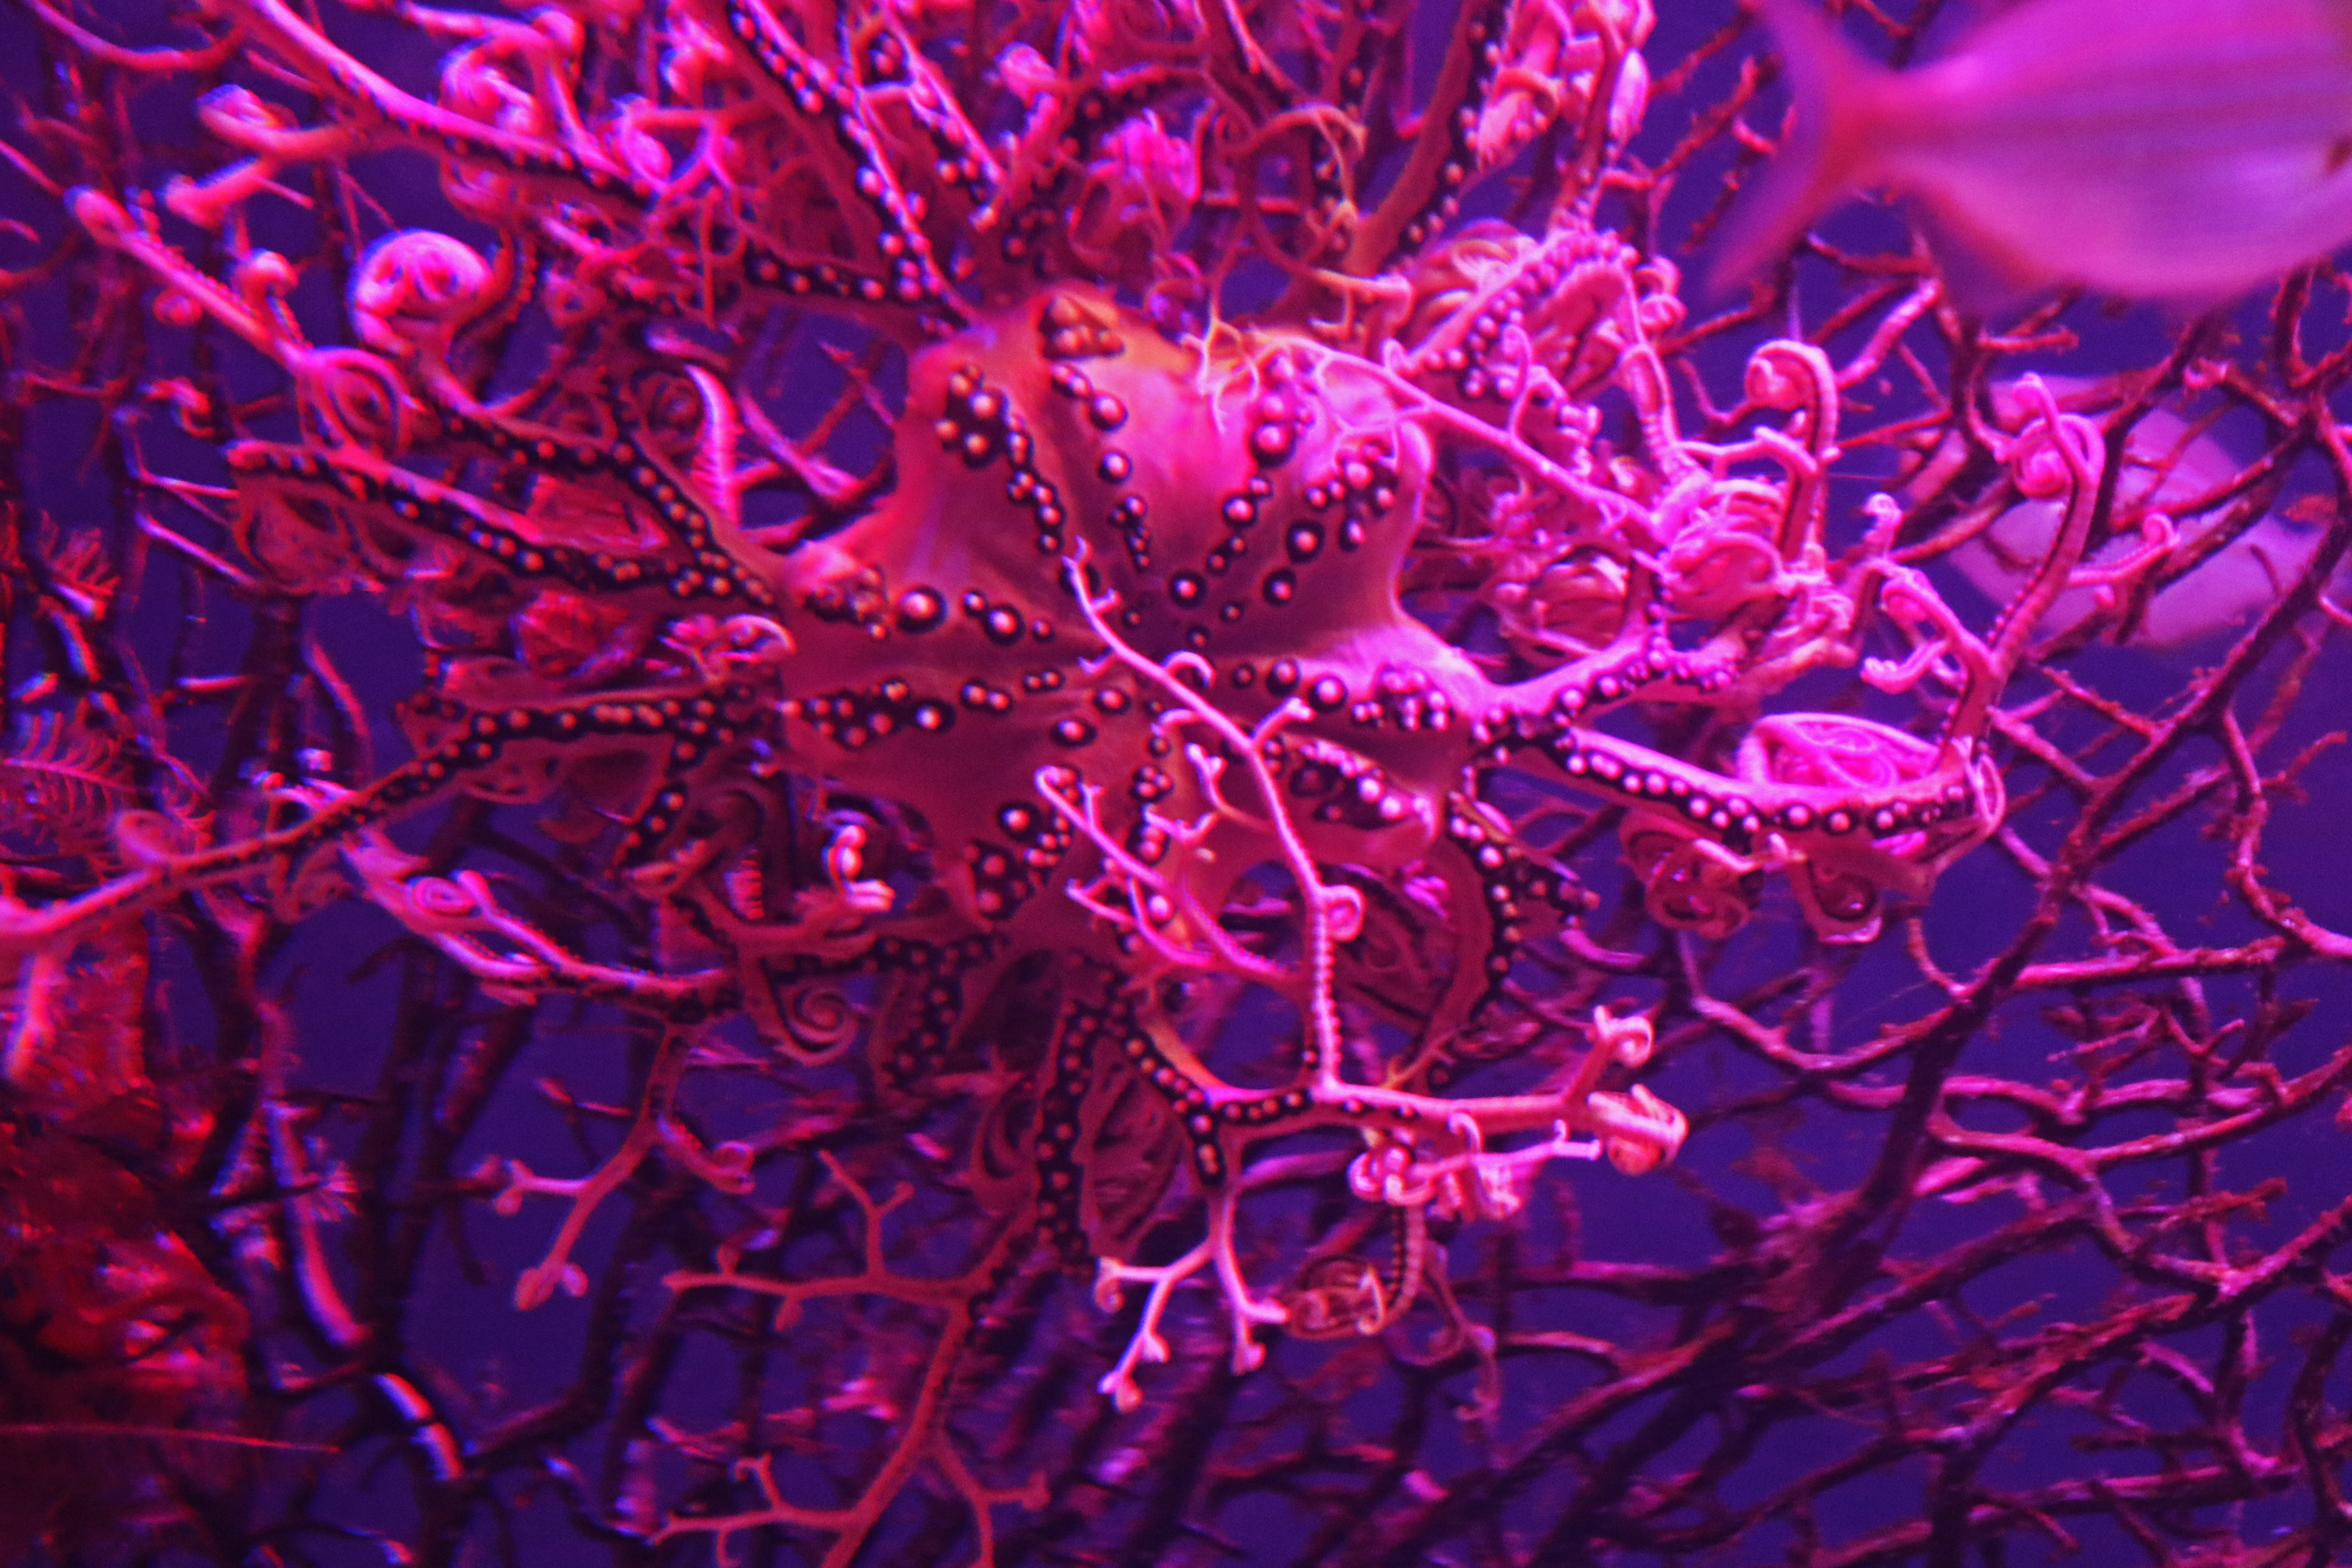 Big purple coral in the sea photo